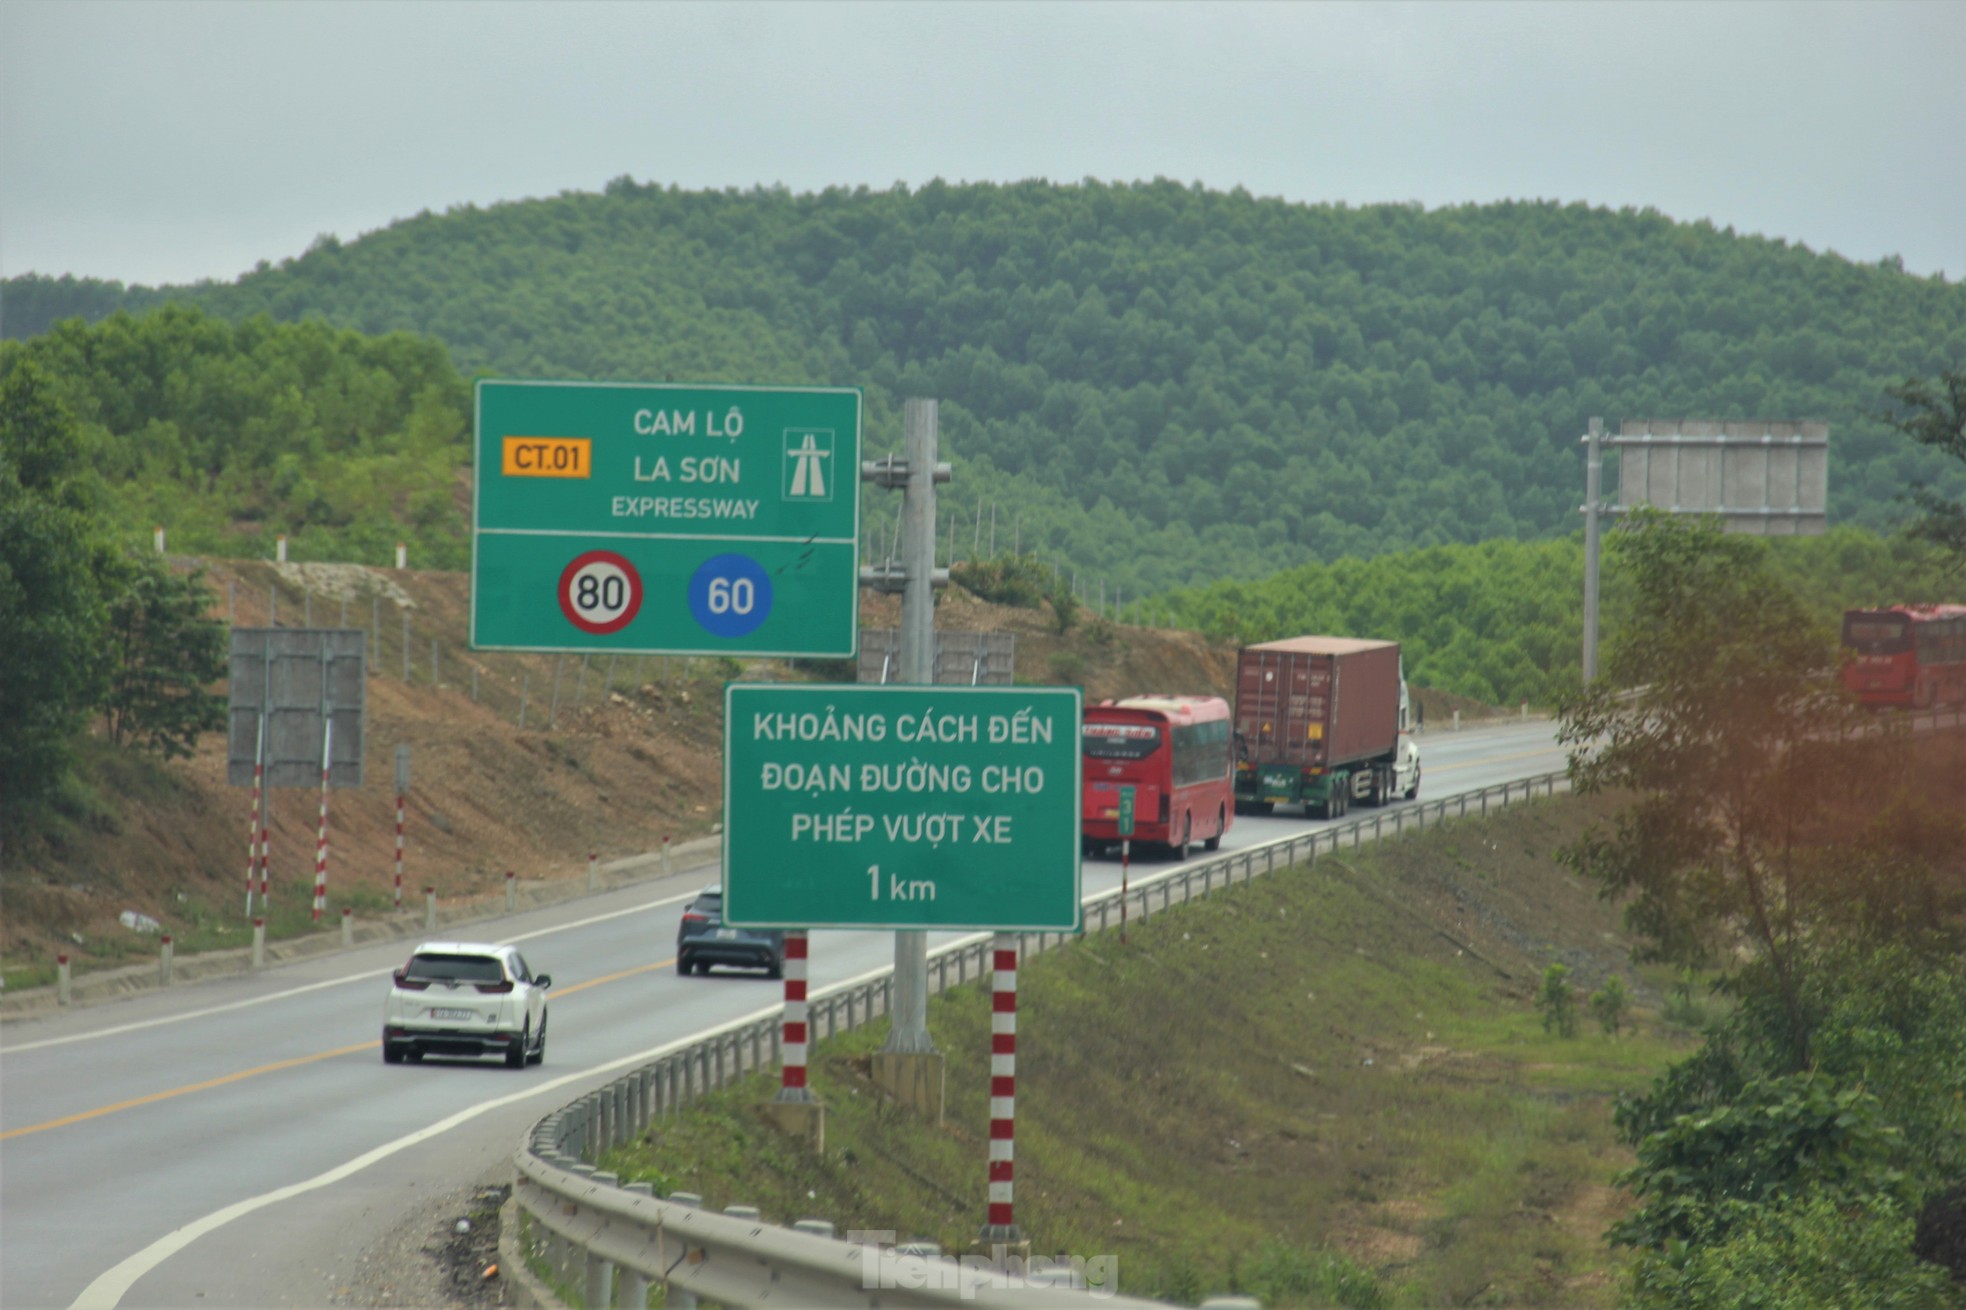 Đường càng đông, vượt ẩu càng nhiều trên cao tốc Túy Loan - La Sơn - Cam Lộ - Ảnh 2.